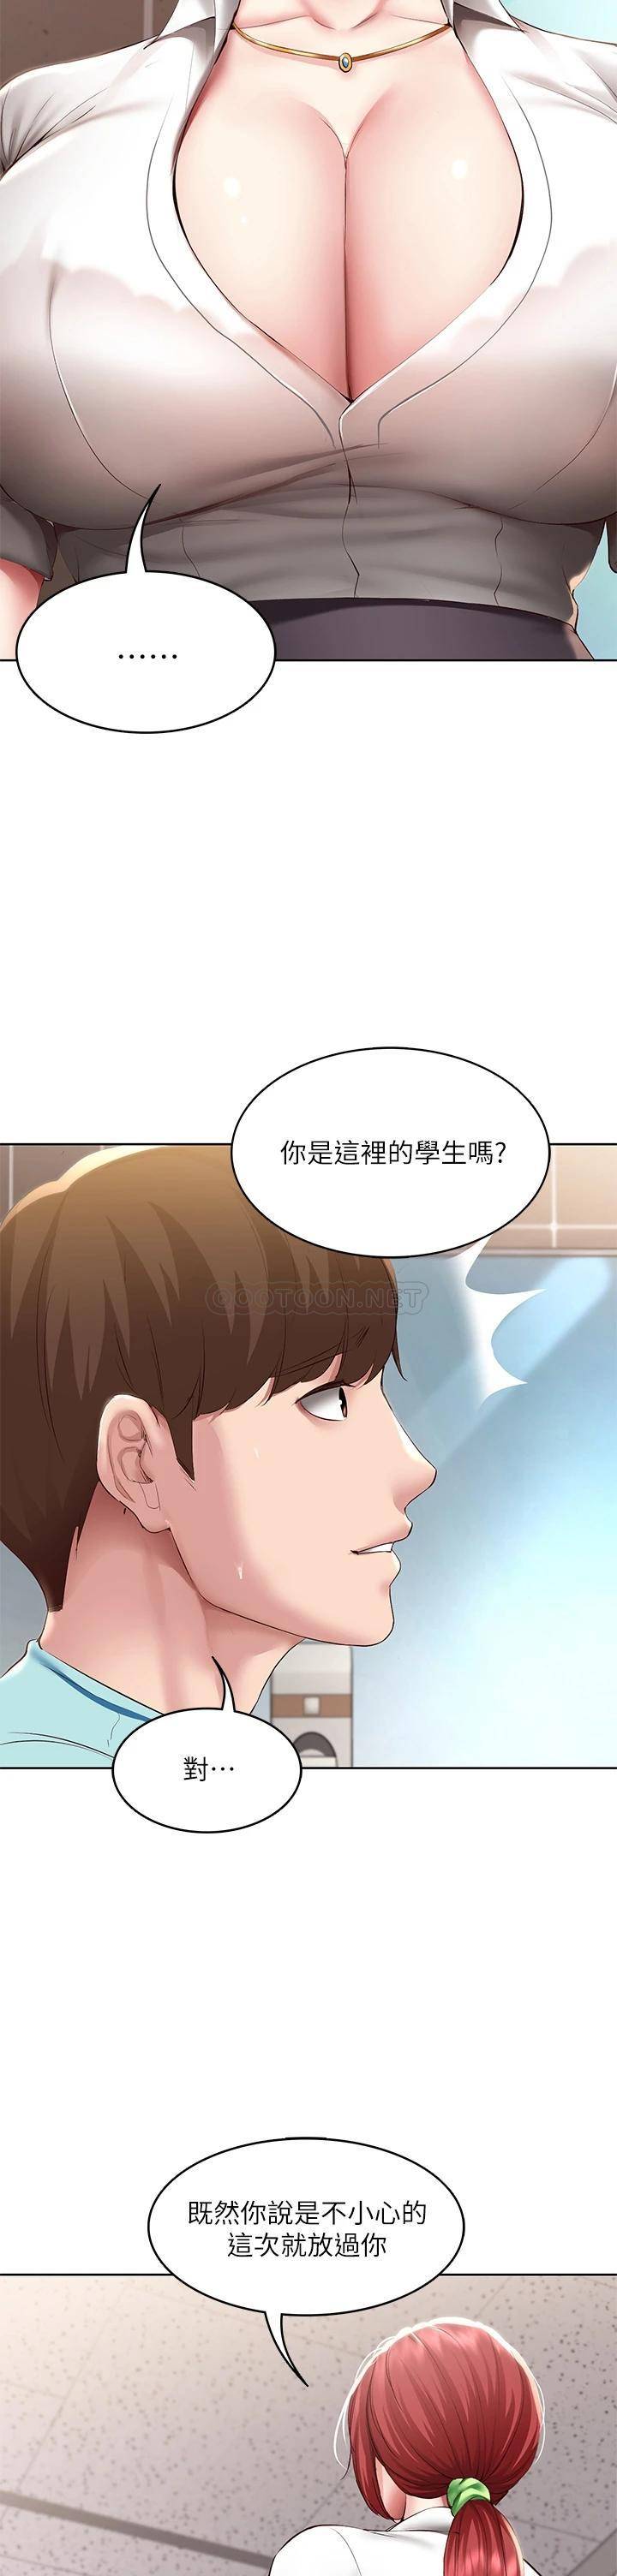 韩国污漫画 寄宿日記 第93话在厕所认识的女人 9